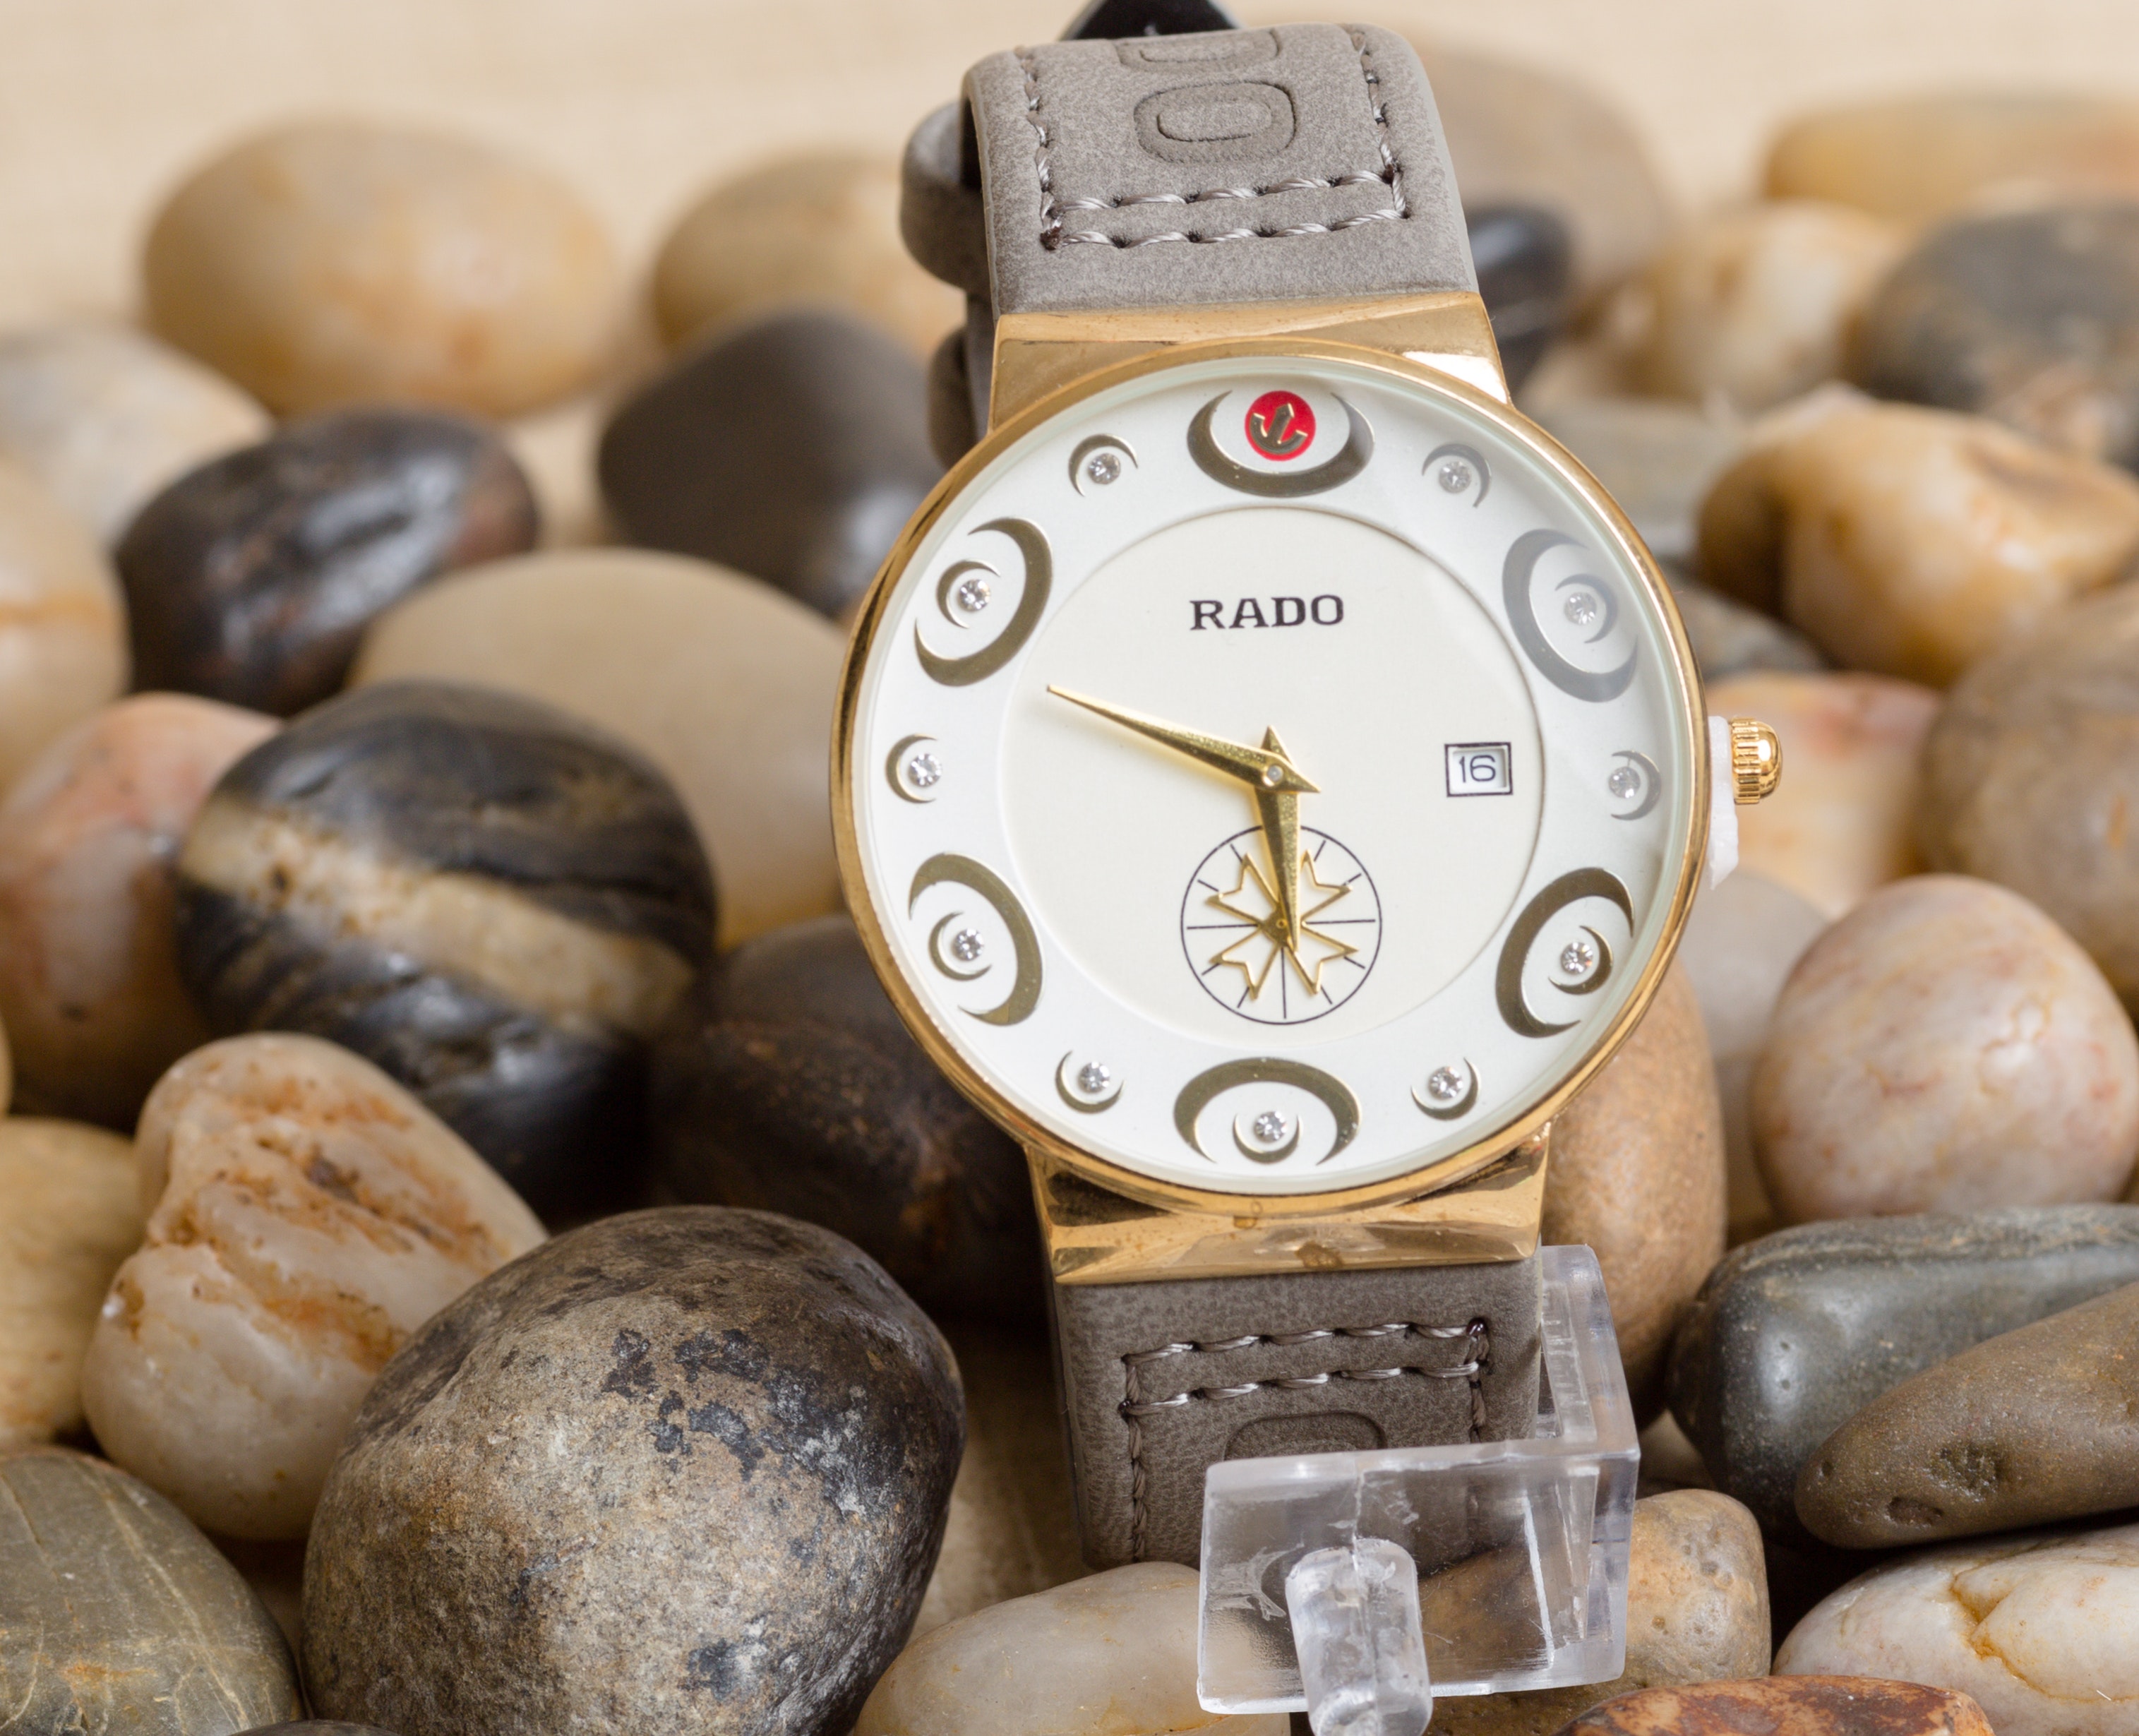 Best Rado Watch Photo · 100% Free Downloads